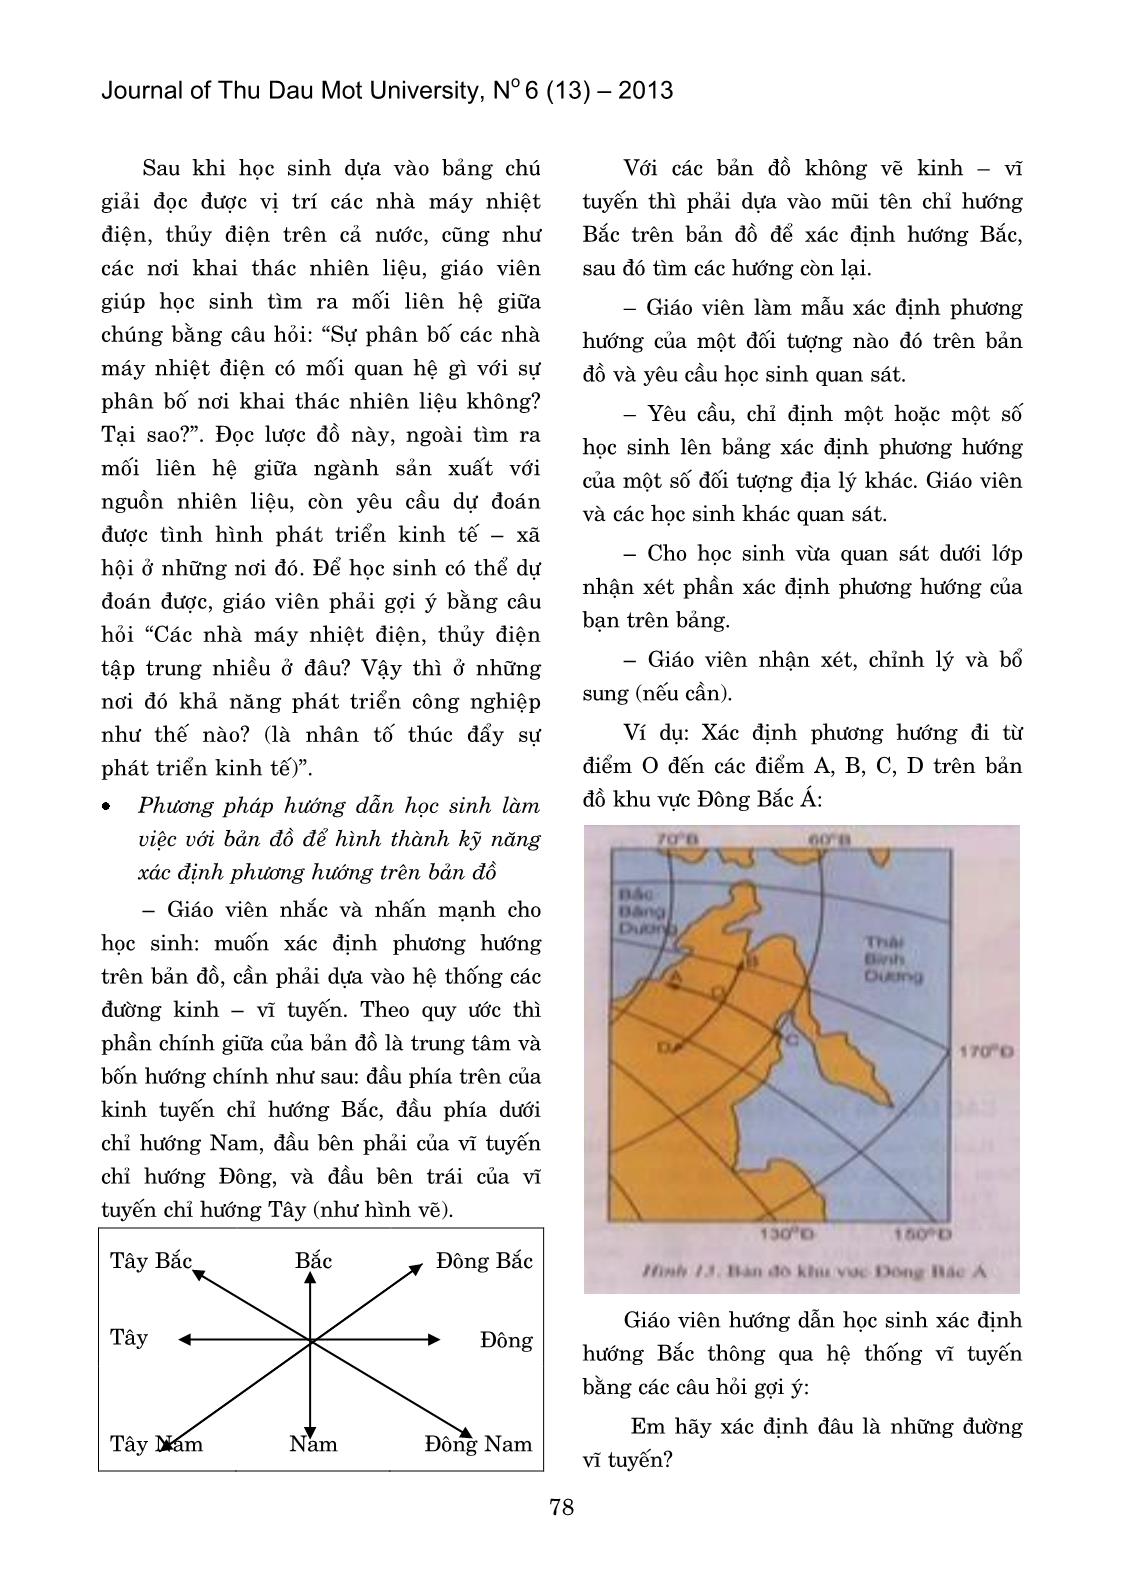 Hướng dẫn học sinh làm việc với bản đồ trong chương trình Địa lý ở trường Trung học Cơ sơ trang 5